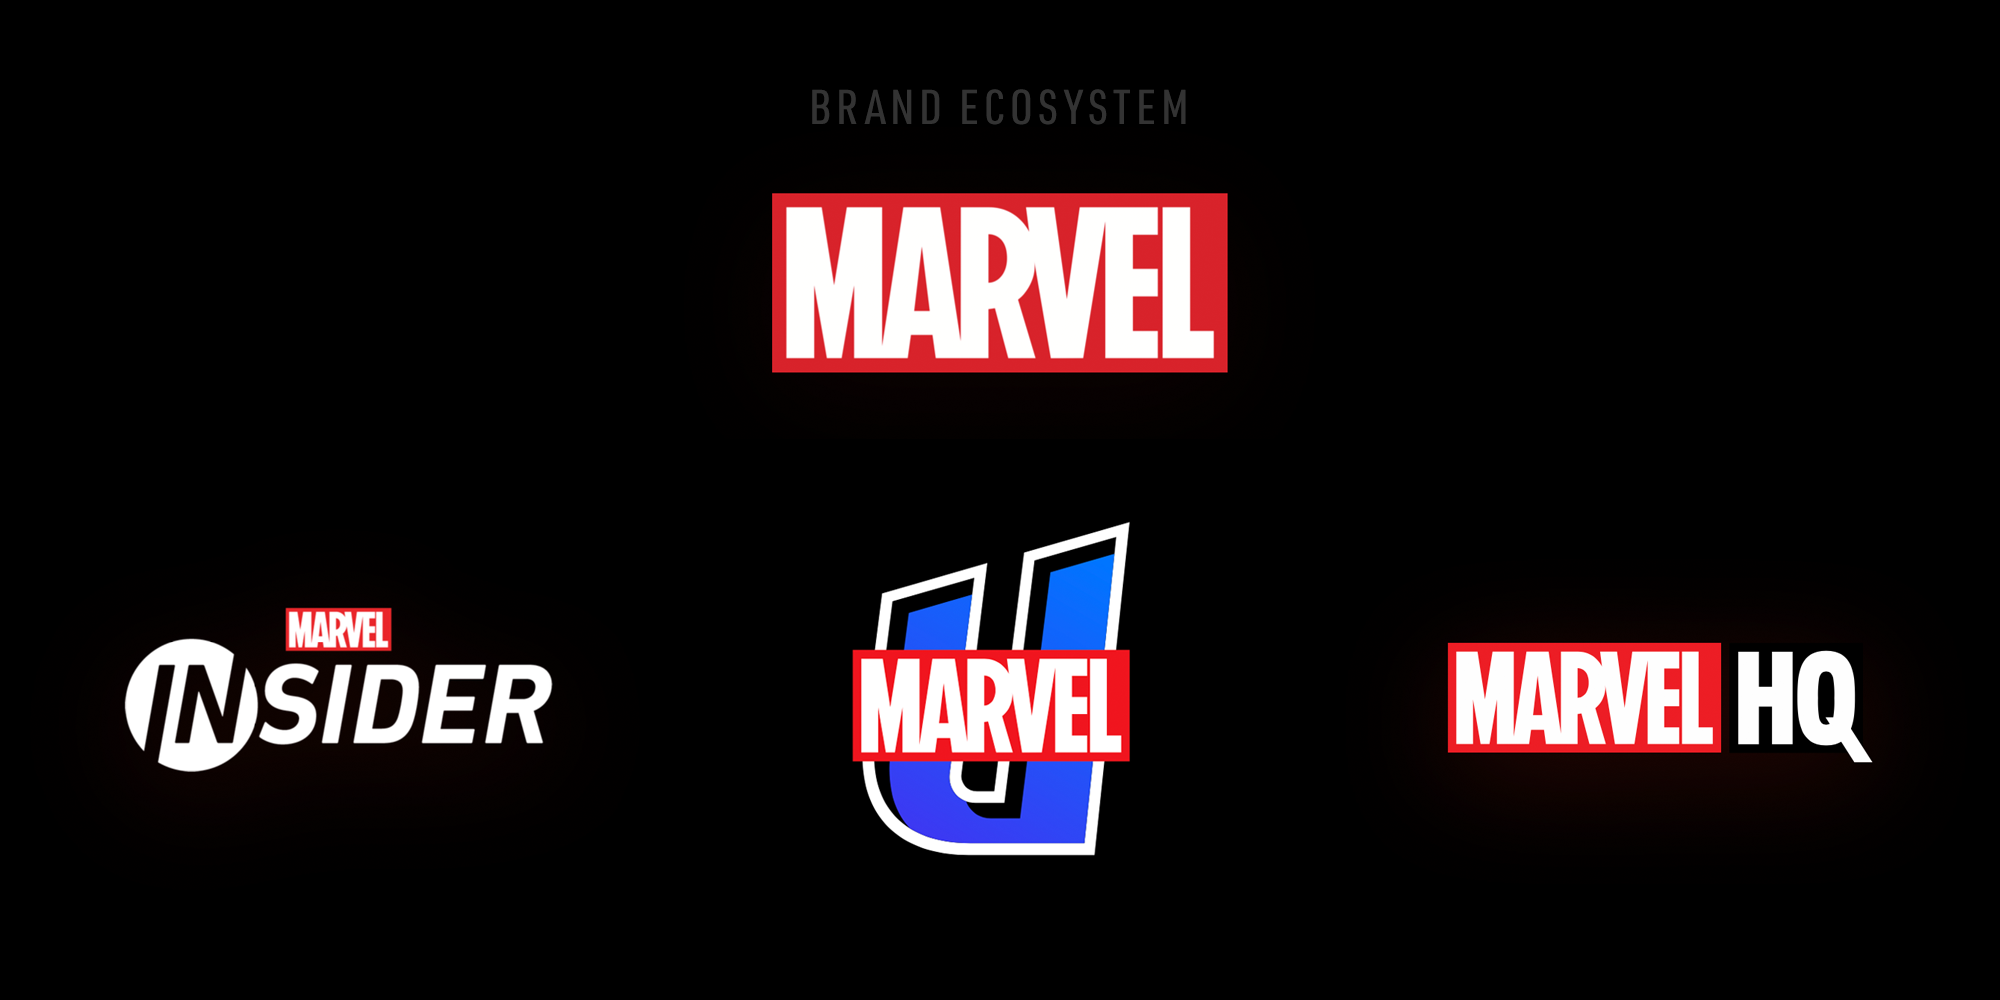 Marvel Brand Ecosystem